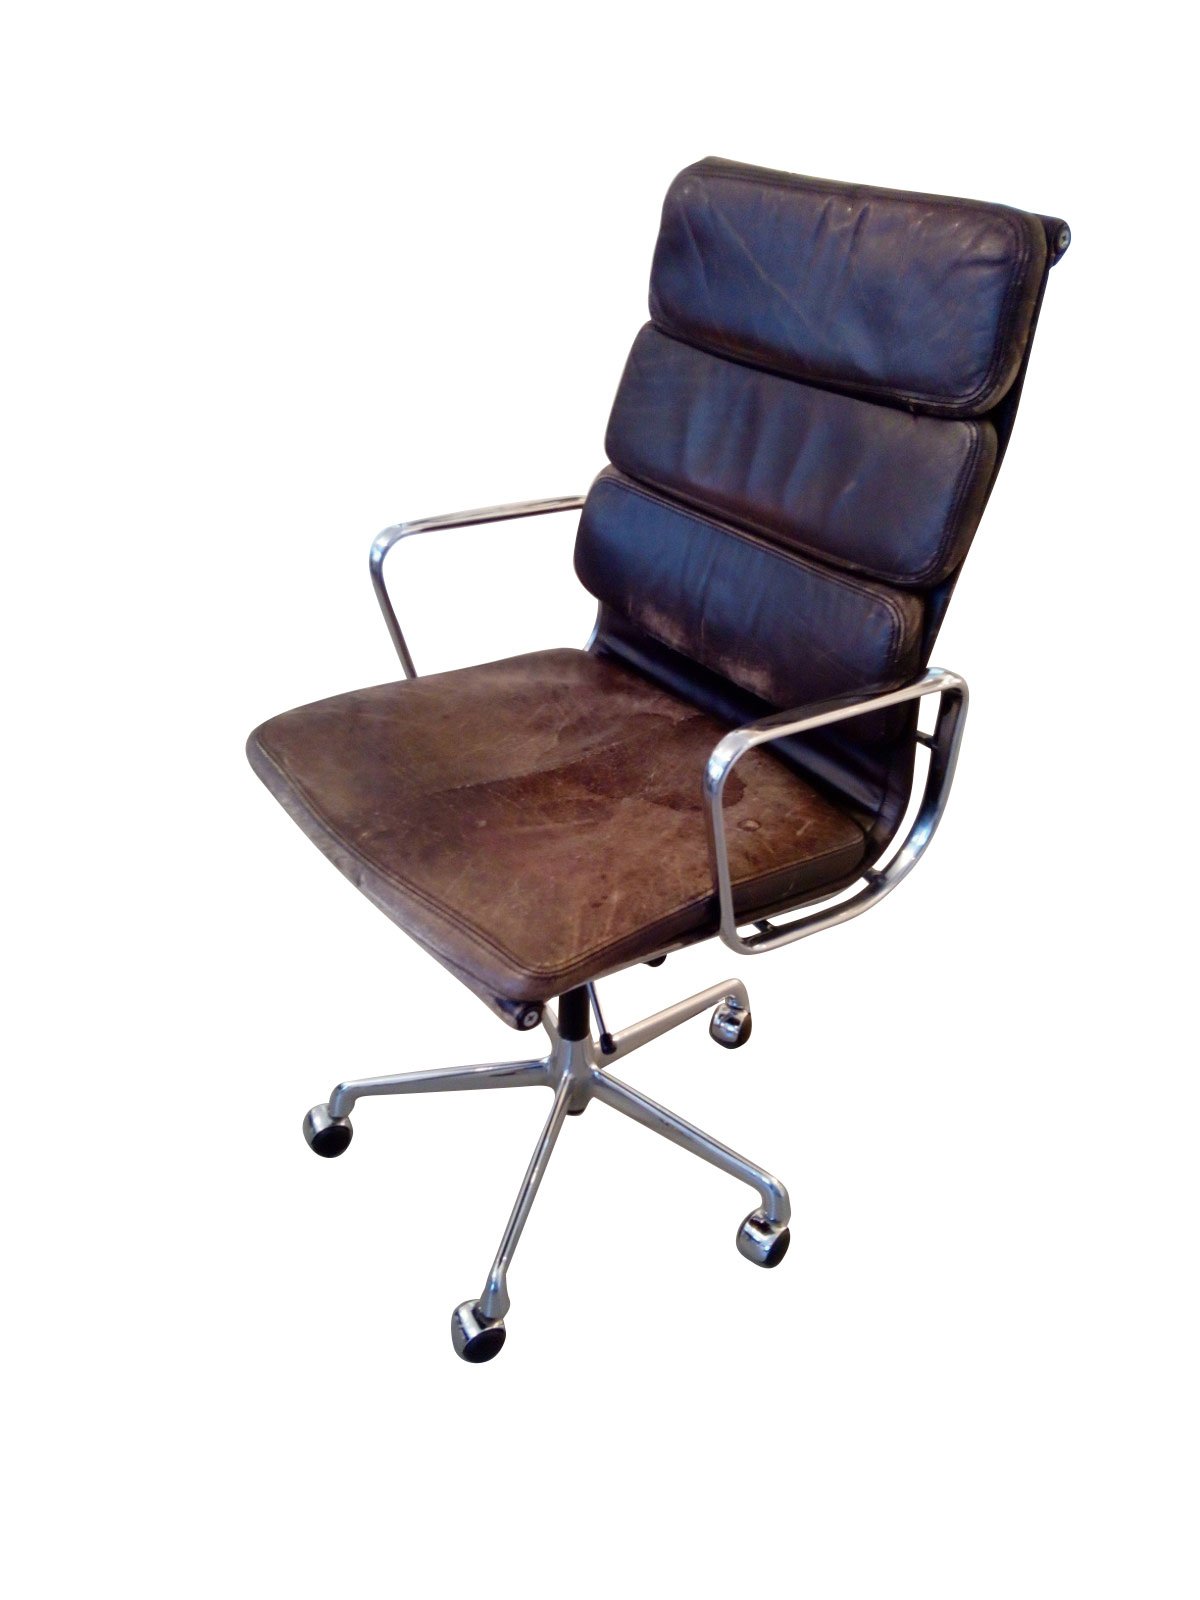 5. »Miller Chair« von Charles Eames: »Mein alter, vor dem Wegschmeißen geretteter original ›Miller Chair‹. Der hat schon richtig Patina, ist aber voll funktionstüchtig und sehr angenehm.«